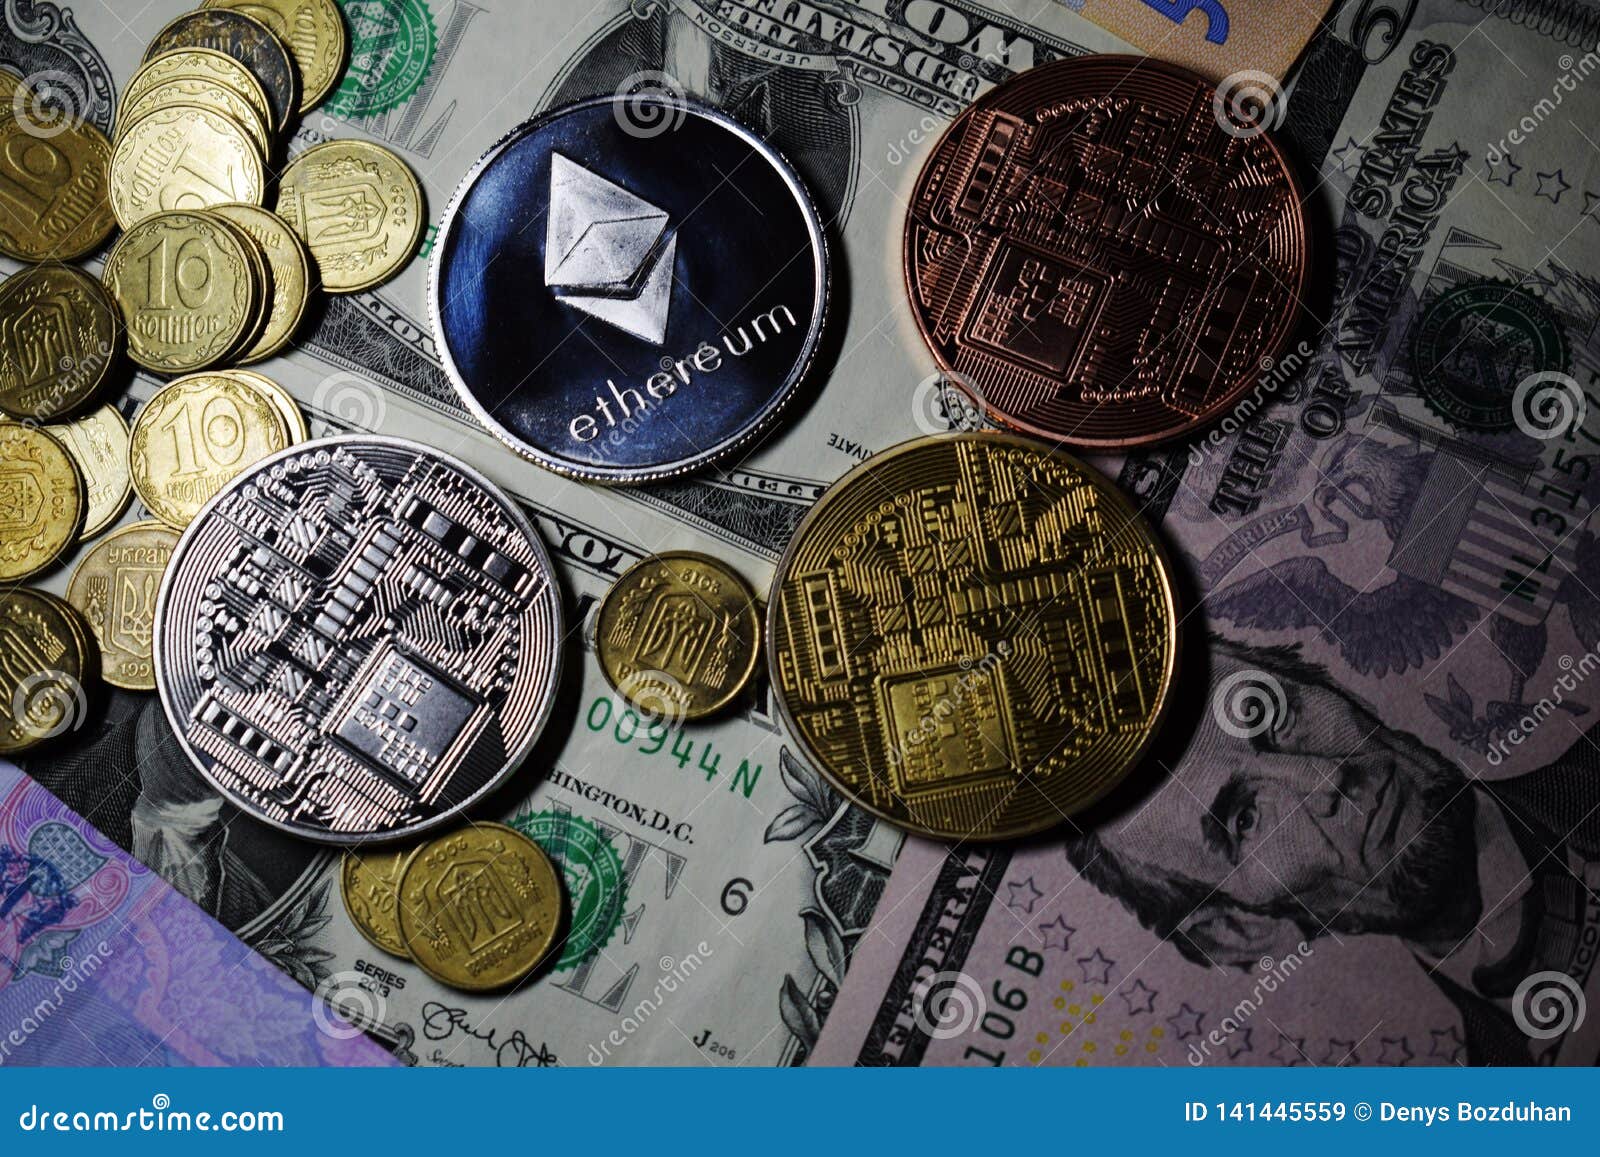 us coin cryptocurrency warren buffett bitcoin